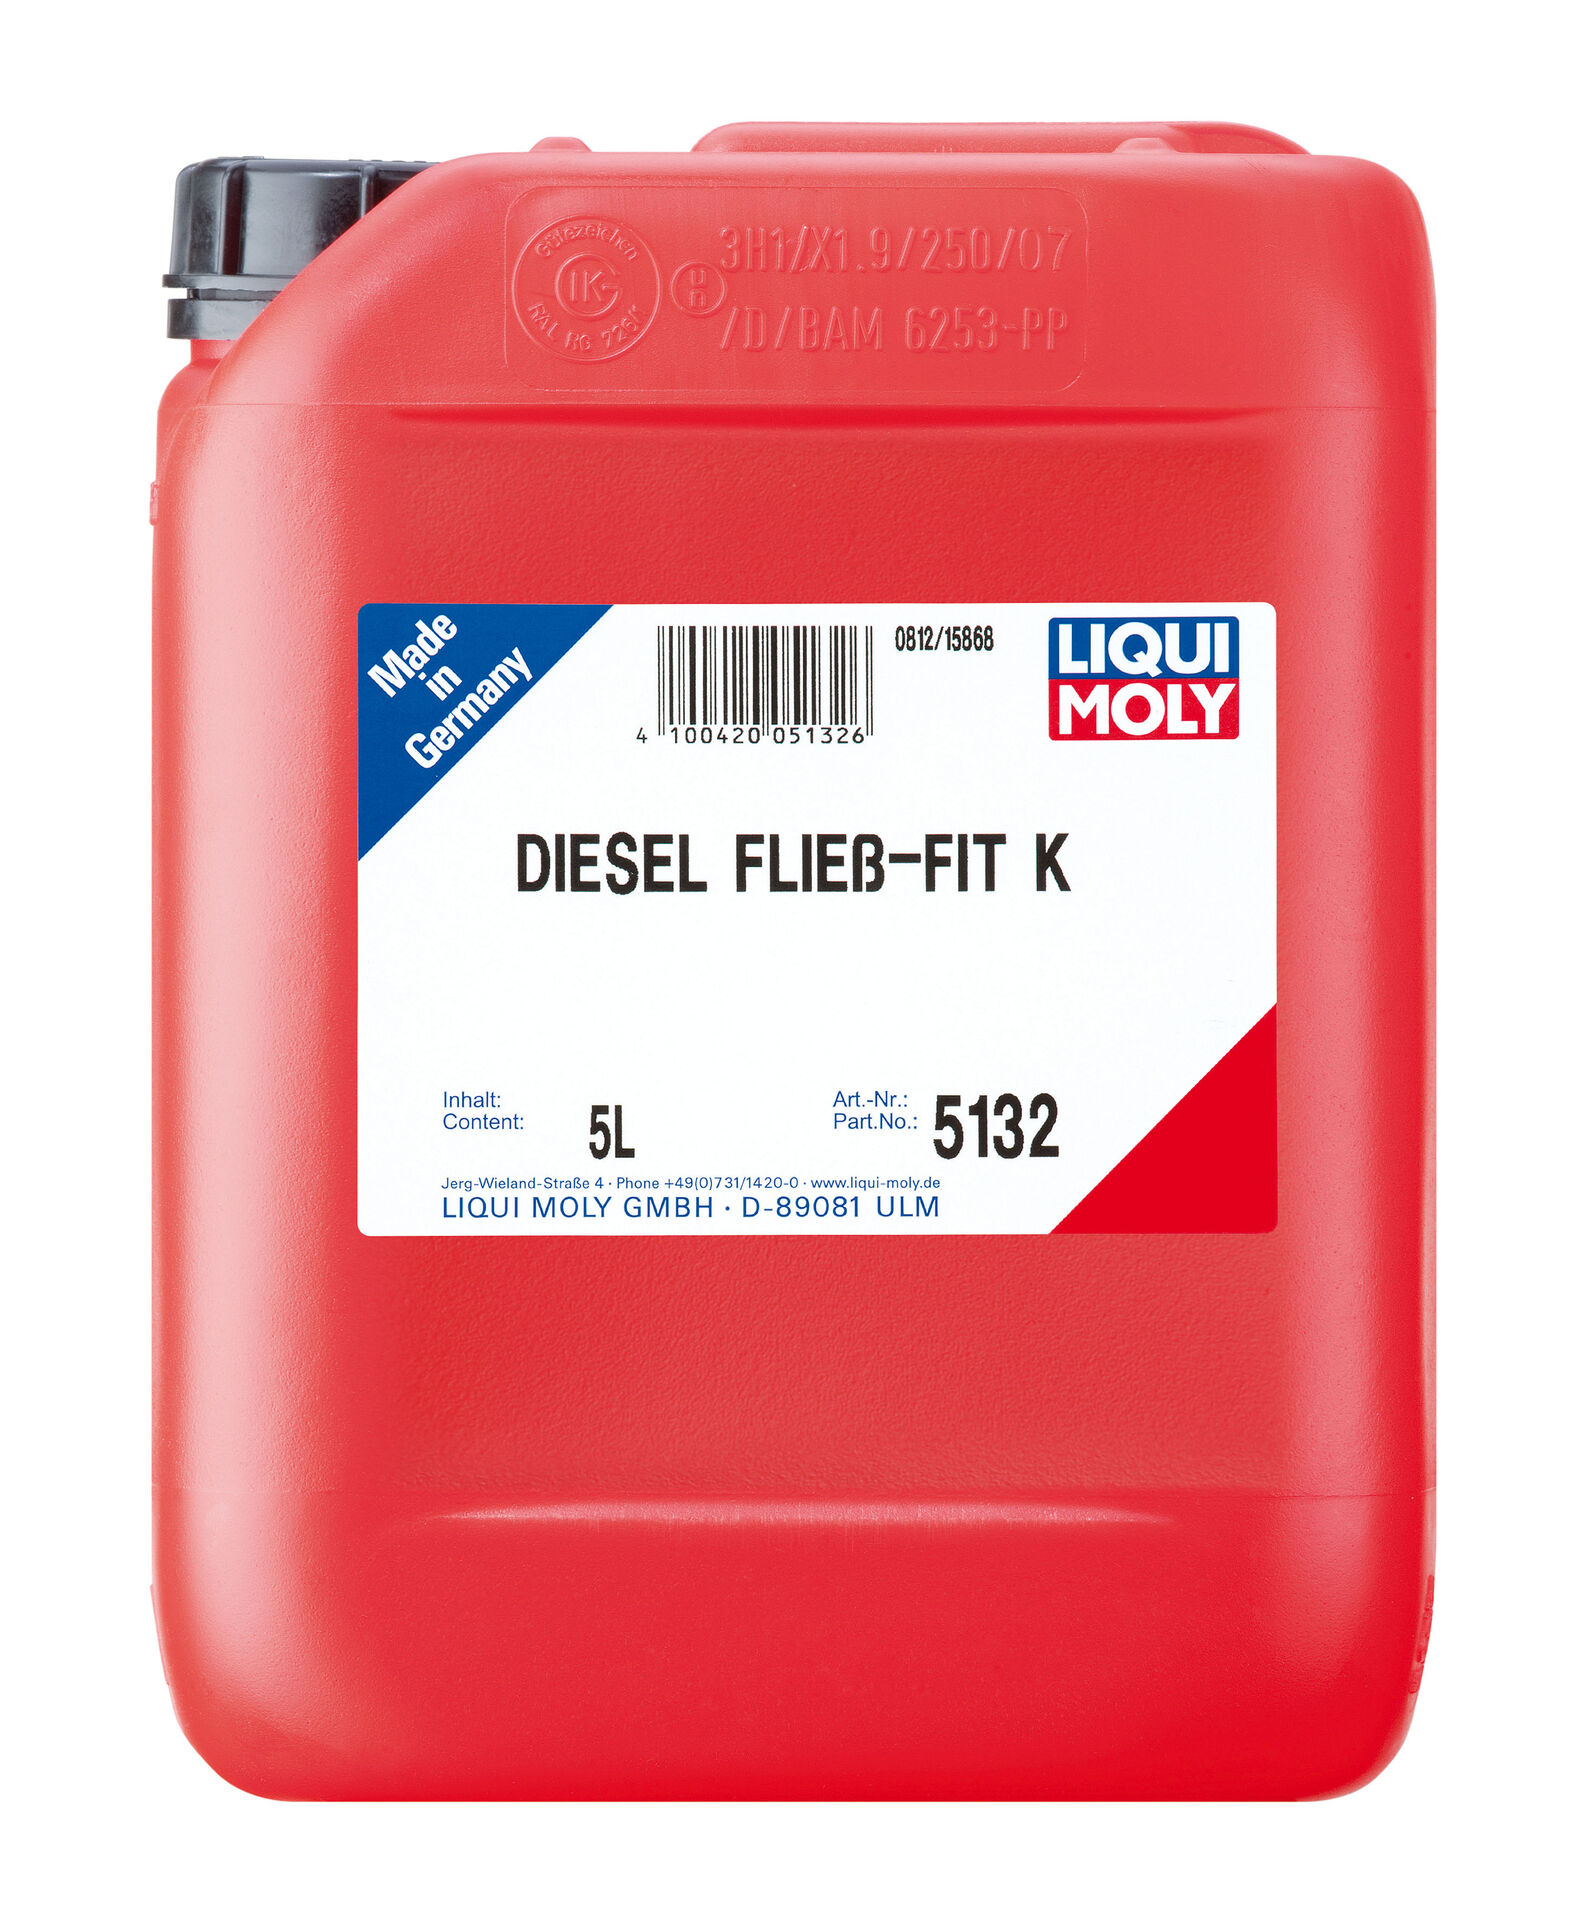 Diesel fließ-fit K Kanister Kunststoff 5 l